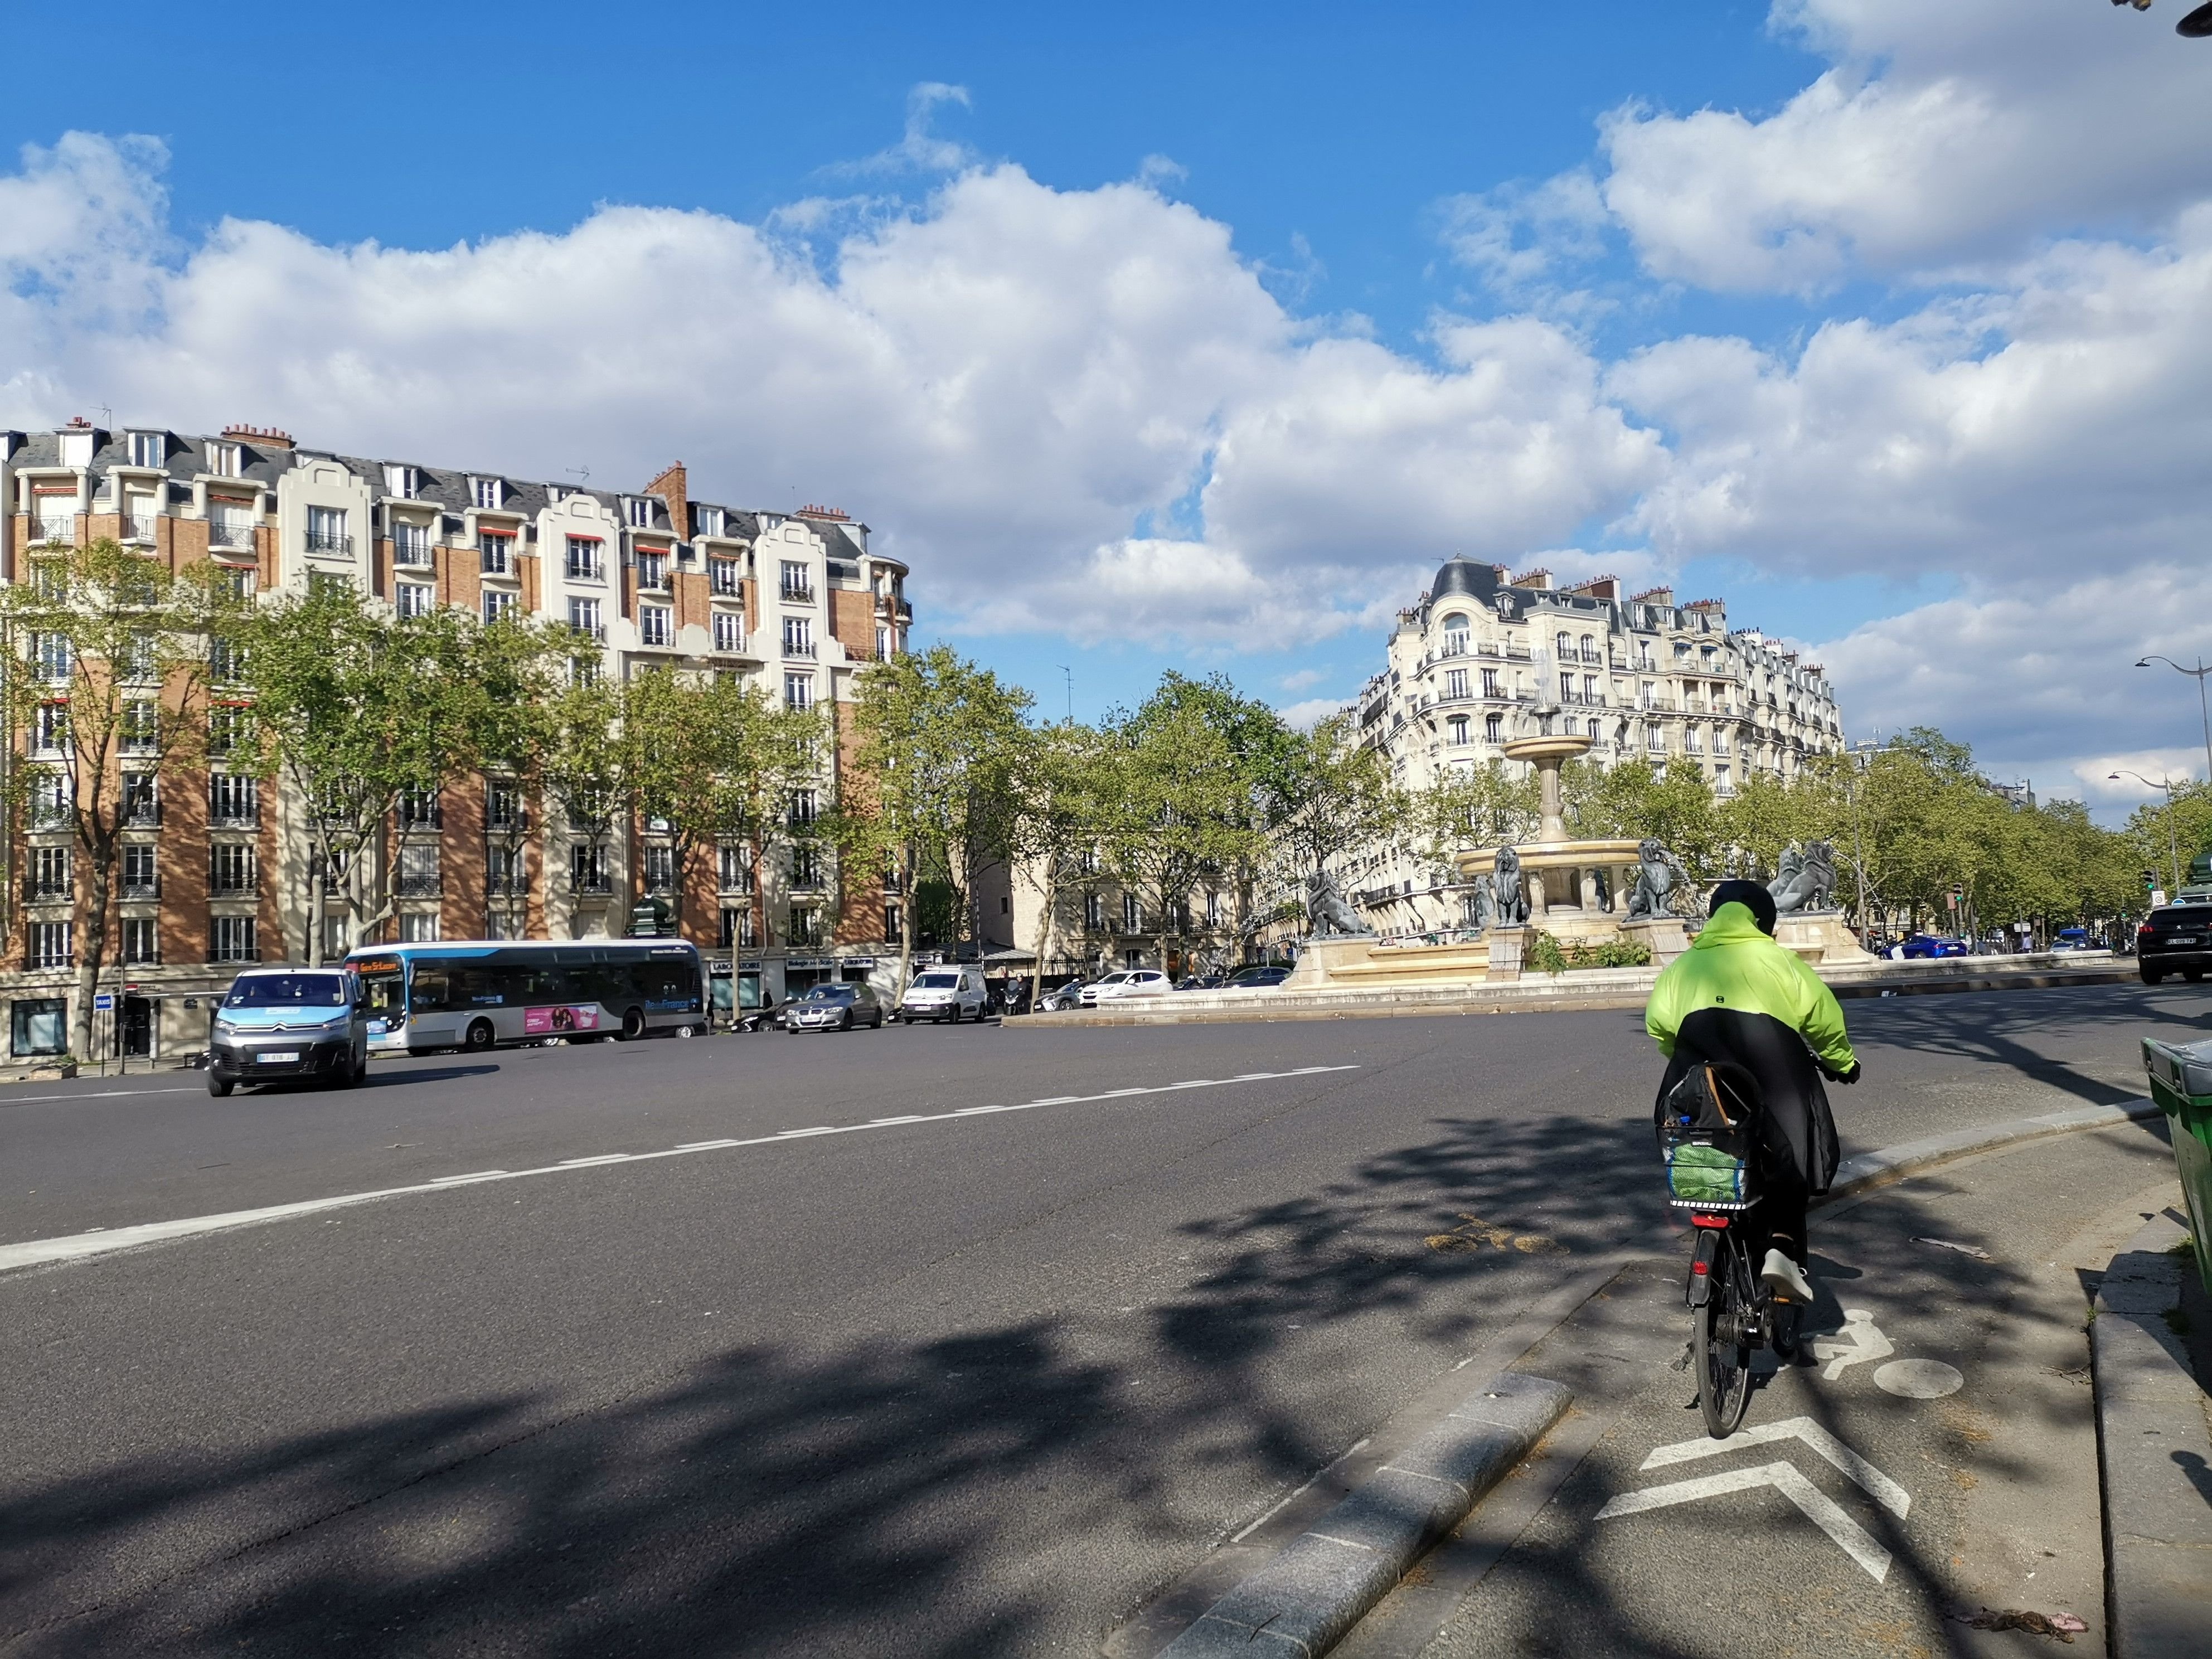 Paris (XIIe), ce jeudi 18 avril. Zones piétonnes, espaces verts… la Ville prévoit de réaménager la place Félix-Éboué. Les travaux doivent durer jusqu'en décembre 2025. LP/Pauline Darvey